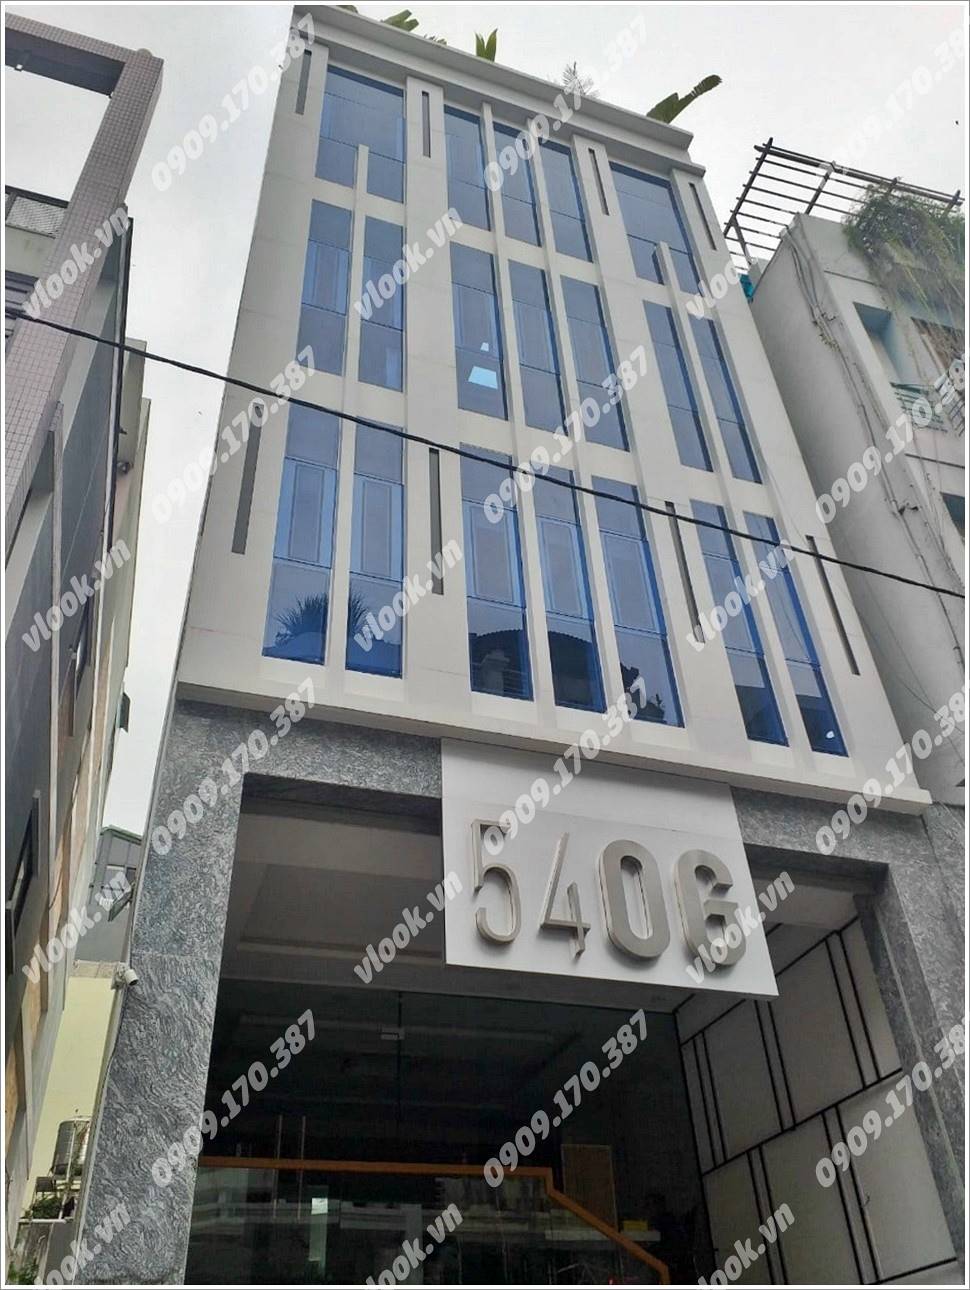 Cao ốc cho thuê văn phòng tòa nhà 54oG Building, Phan Ngữ, Quận 1, TPHCM - vlook.vn